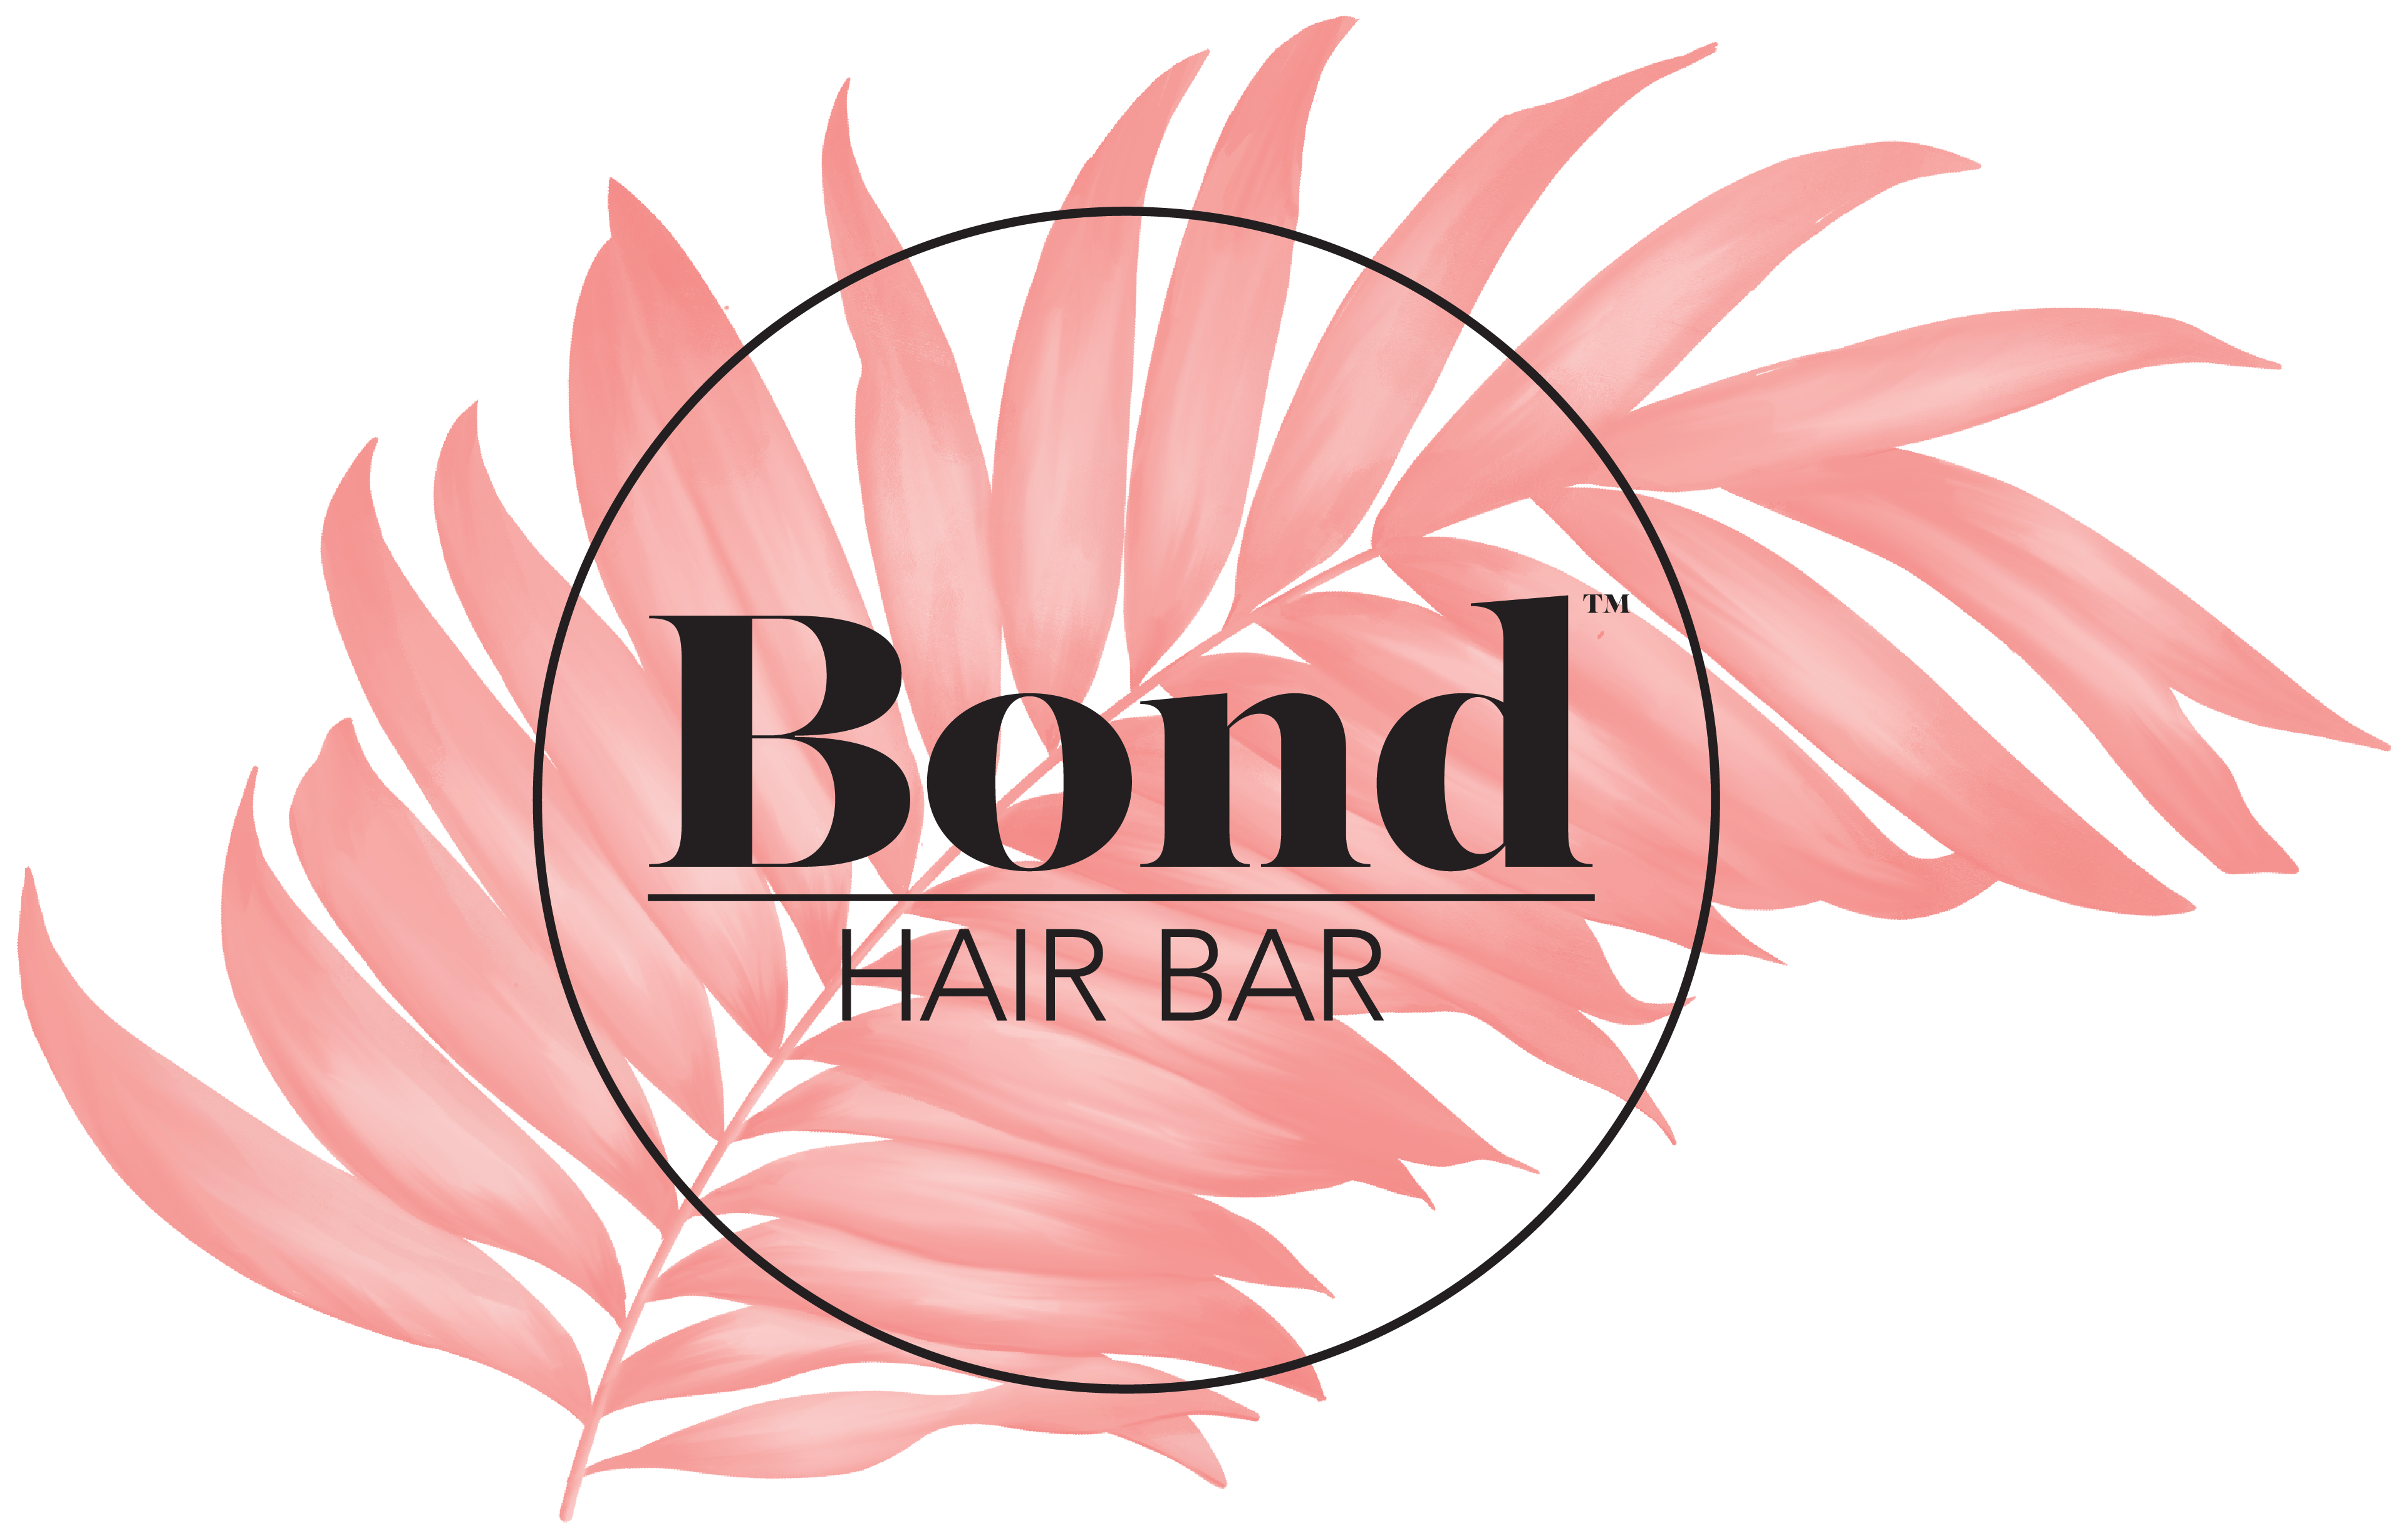 Bond Hair Bar